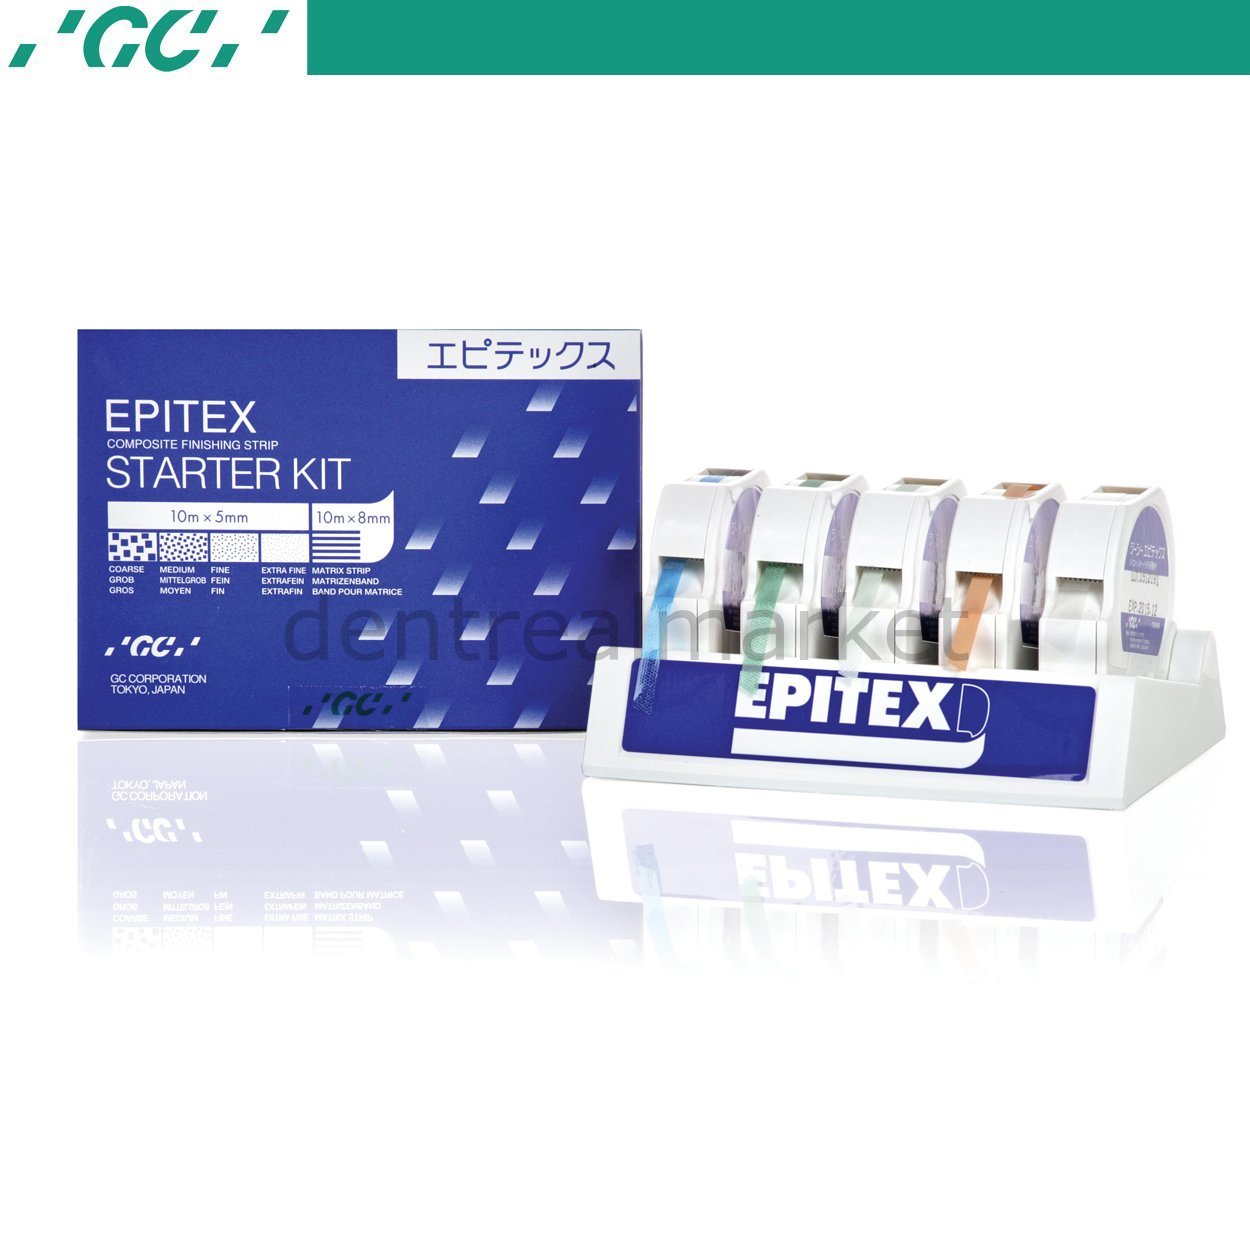 Epitex Strip Starter Kit - Bitirme ve Parlatma Şeritleri